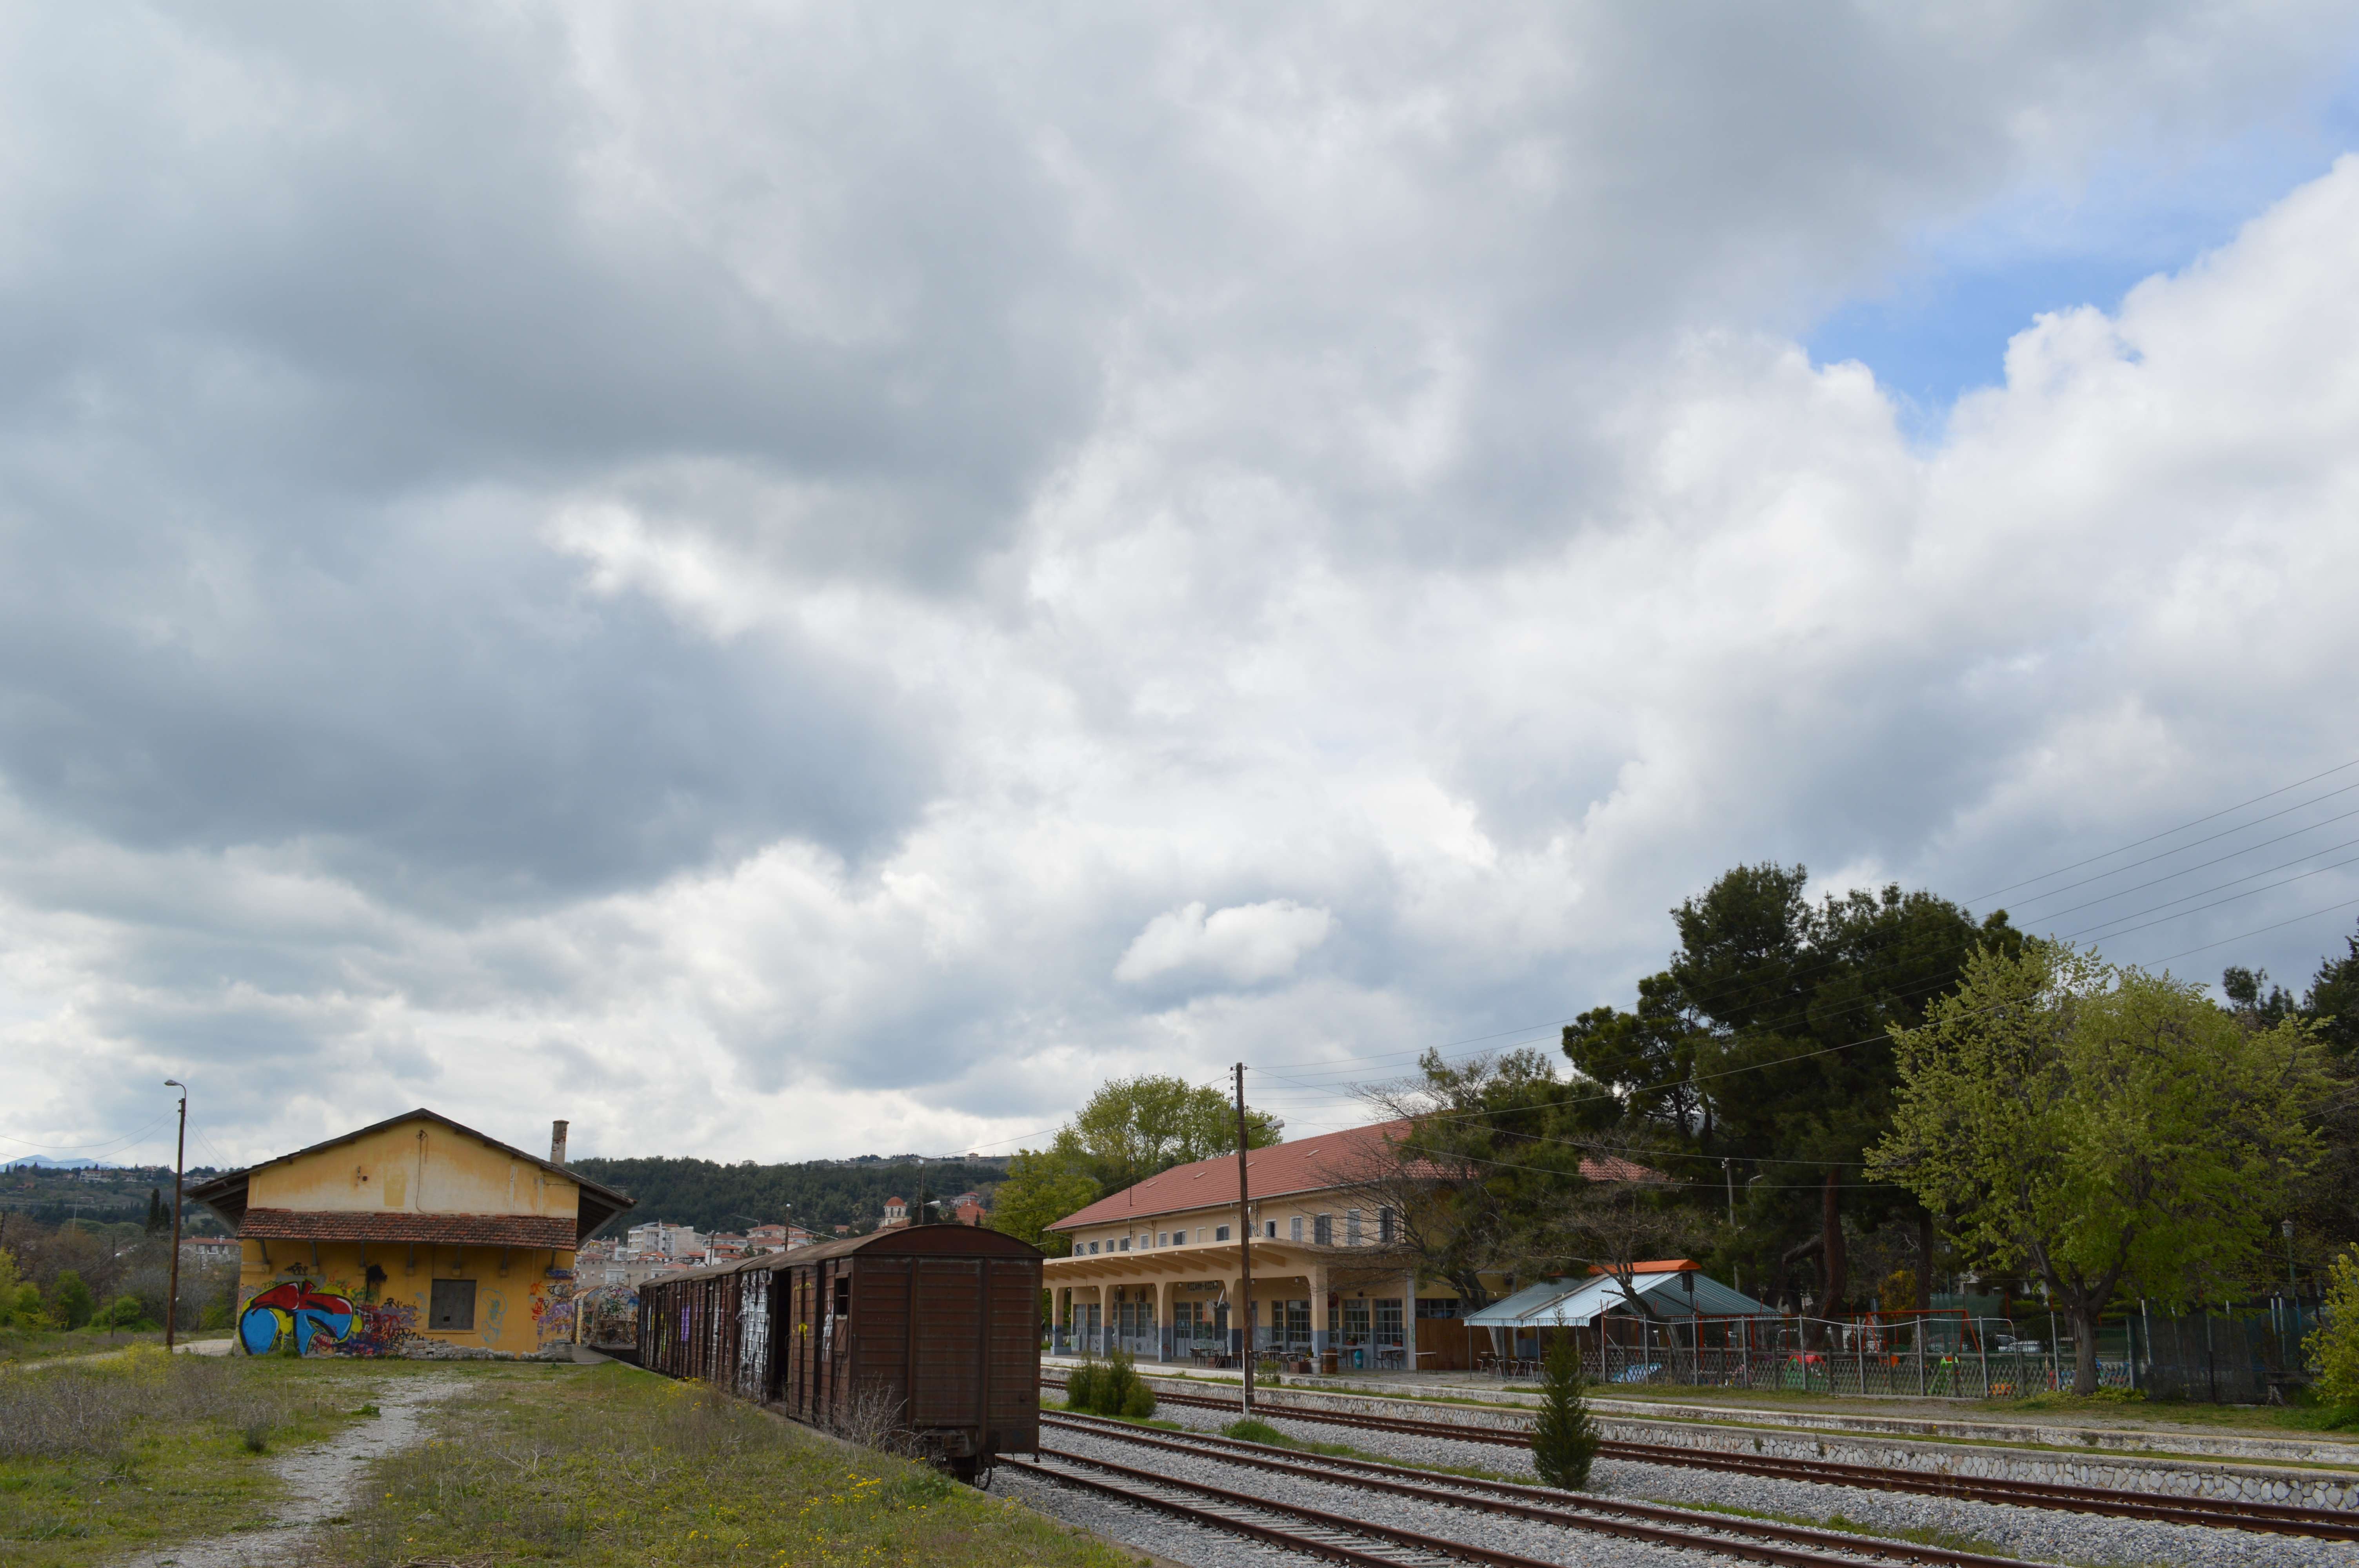 Η περιοχή του Σιδηροδρομικού Σταθμού Κοζάνης, σήμερα, κοντά στον ναό του Αγίου Αθανασίου. Εκεί κοντά βρισκόταν κι η συνοικια "Γύφτικα" ή "Τρανή αυλή", όπως την αποκαλούσαν ειρωνικά οι Κοζανίτες.